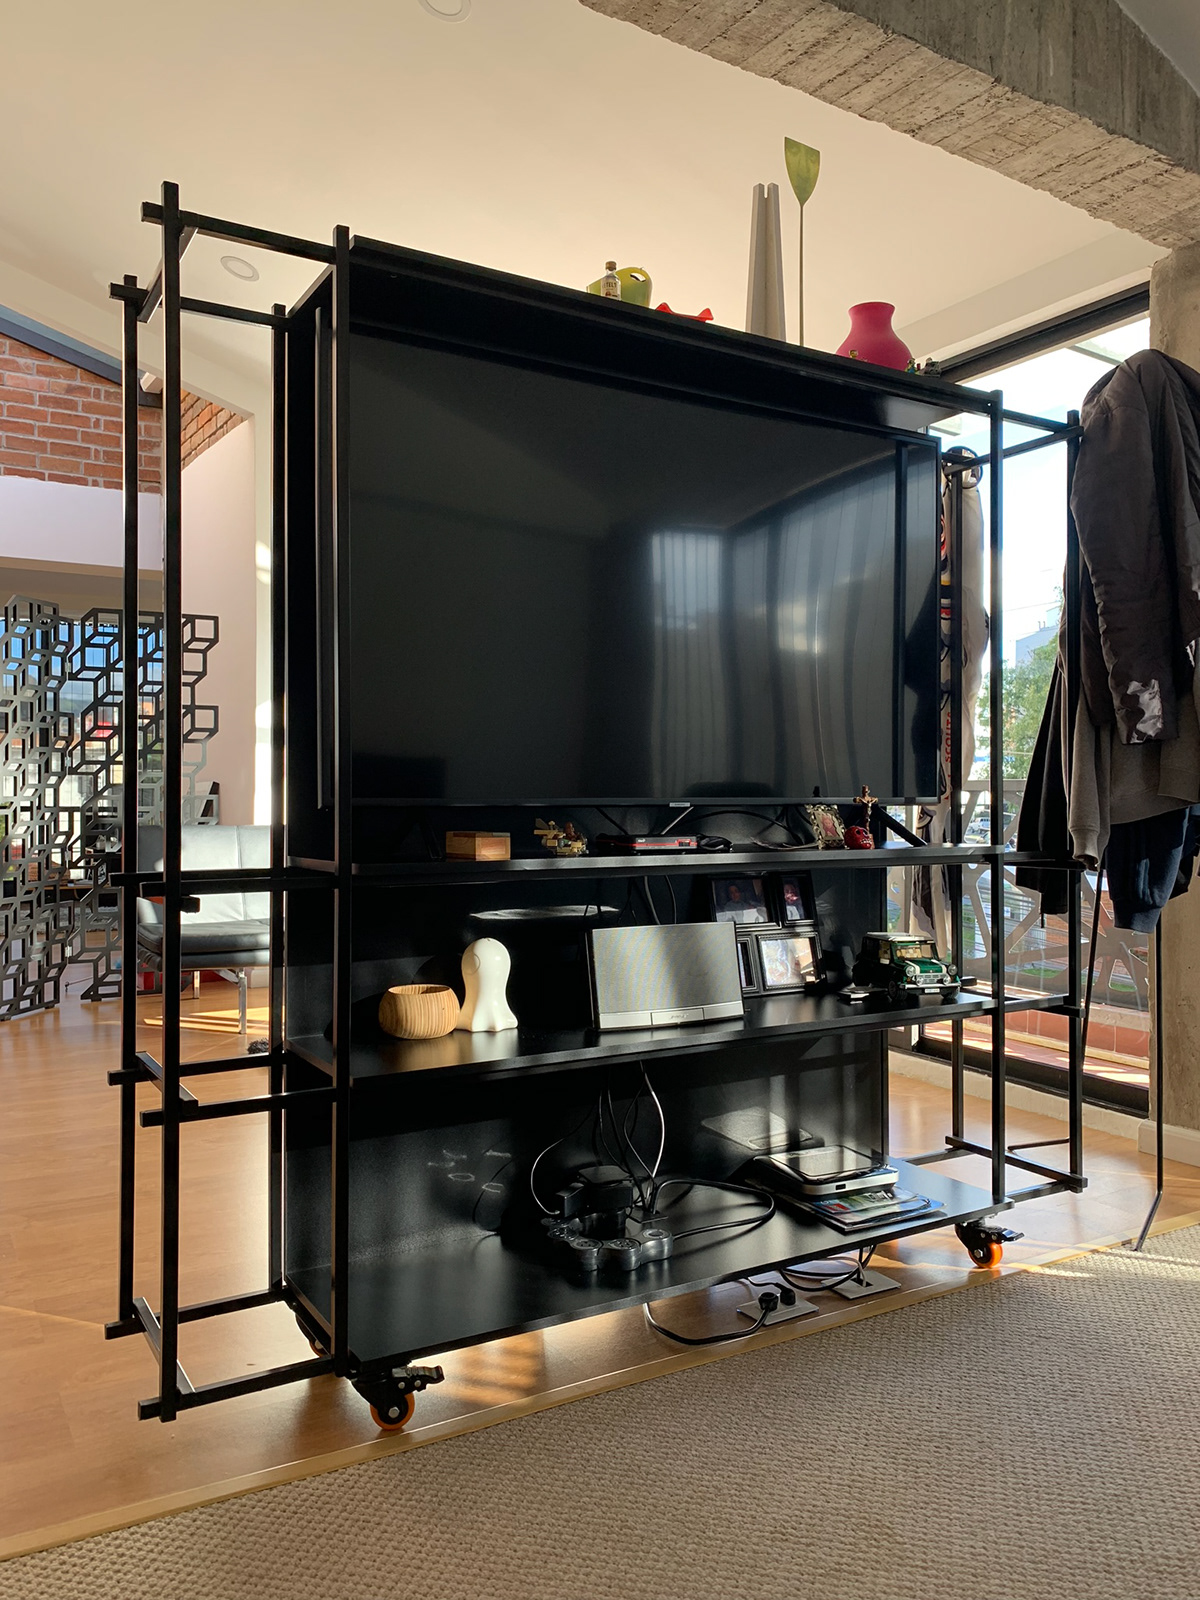 TV Stand Room Divider furniture design  Home Furniture product design  furniture